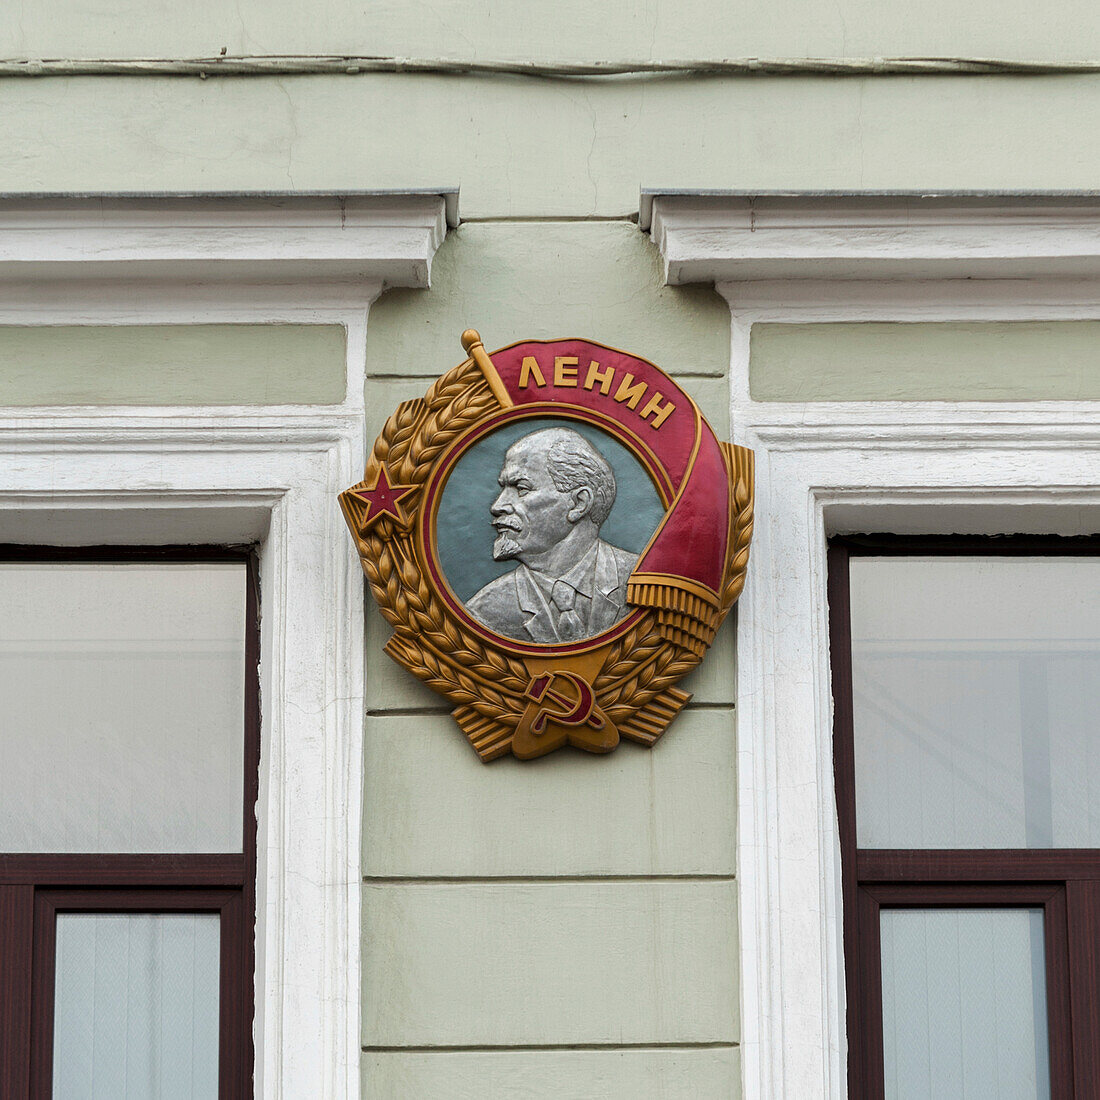 Bild eines Anführers auf einem Gebäude; St. Petersburg Russland